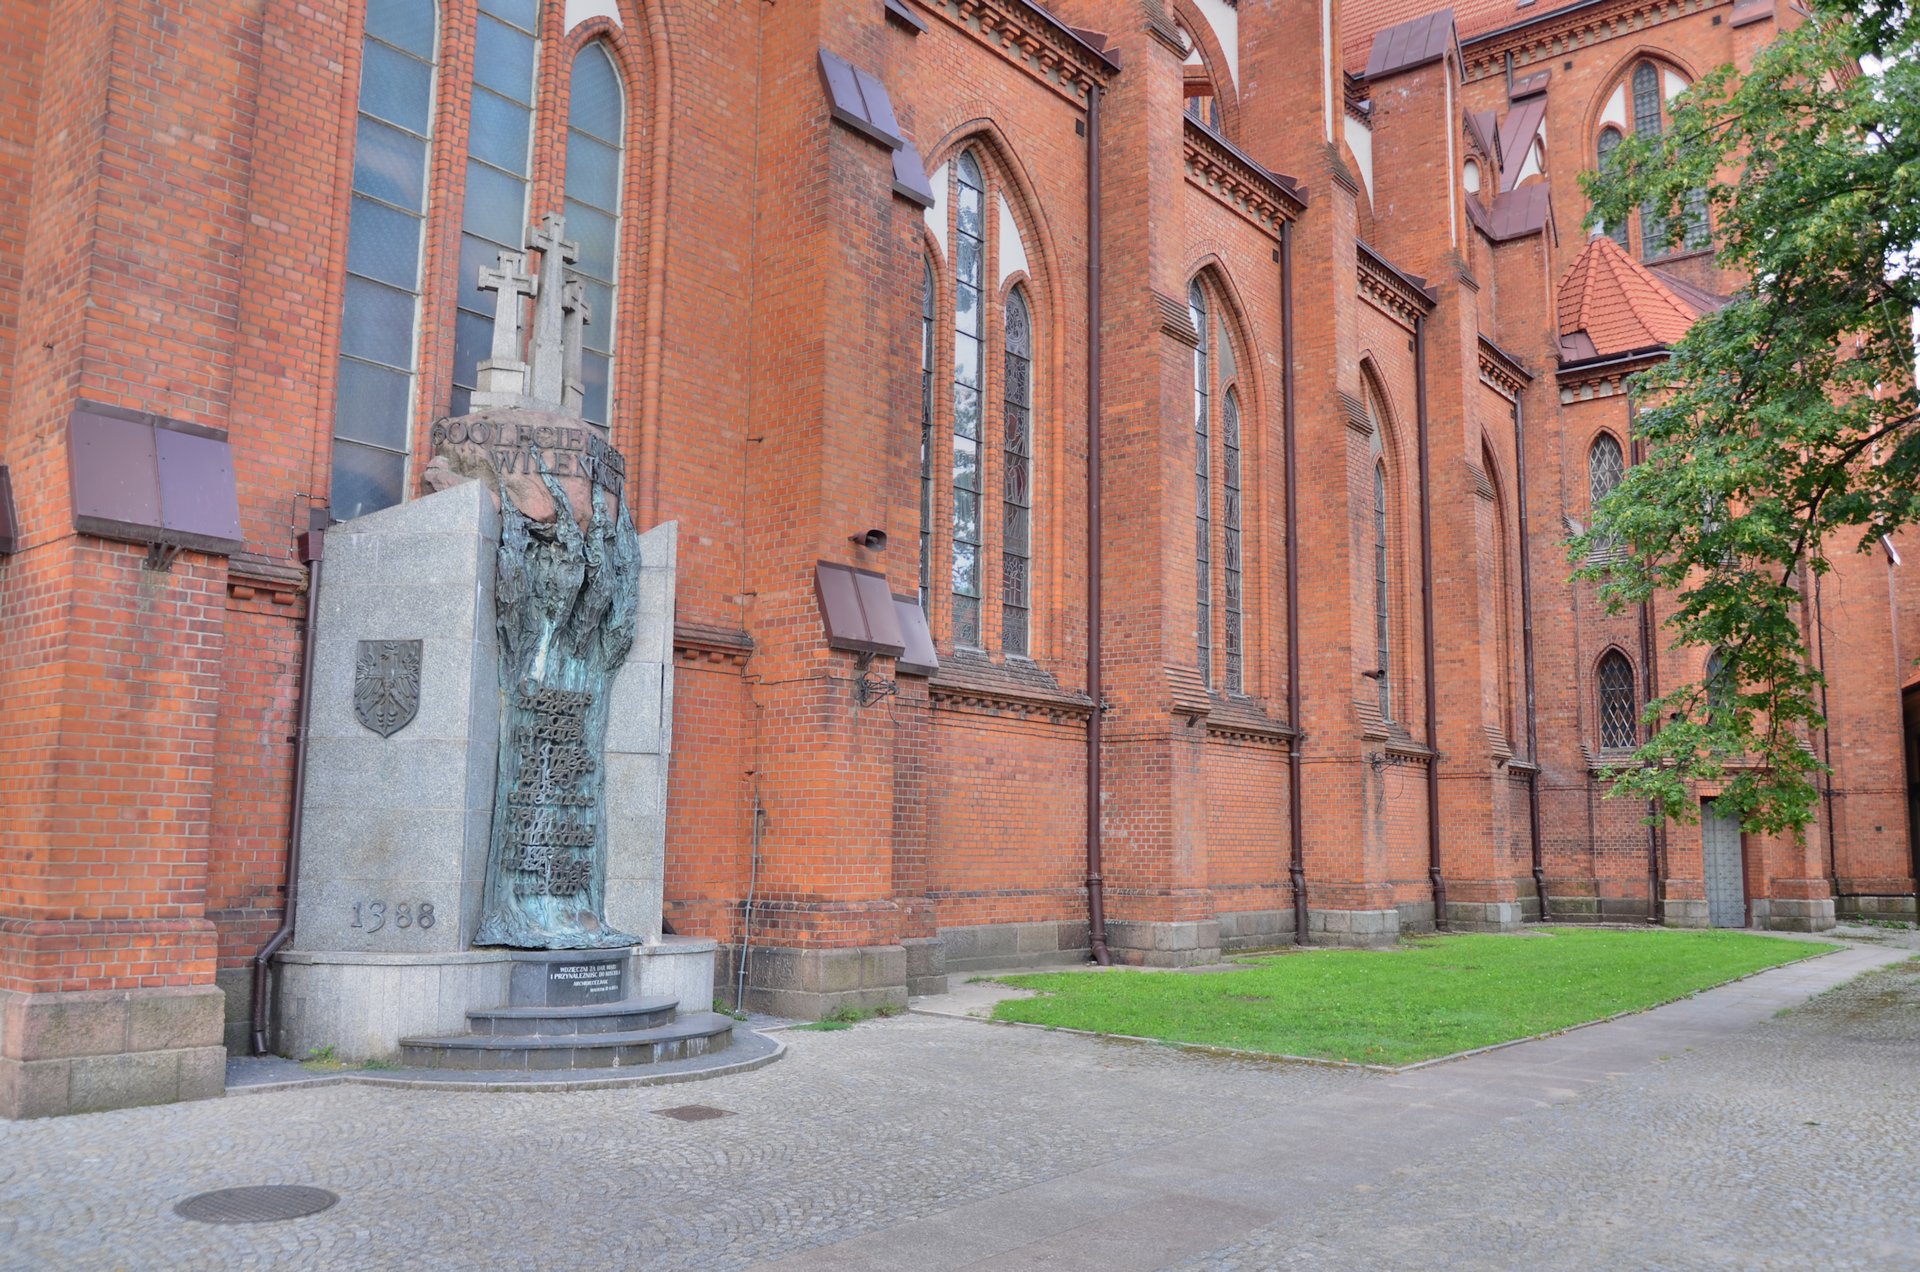 Białystok Katedra Bazylika Mniejsza Fara kościół religia katolicyzm centrumfree photo darmowe zdjęcie